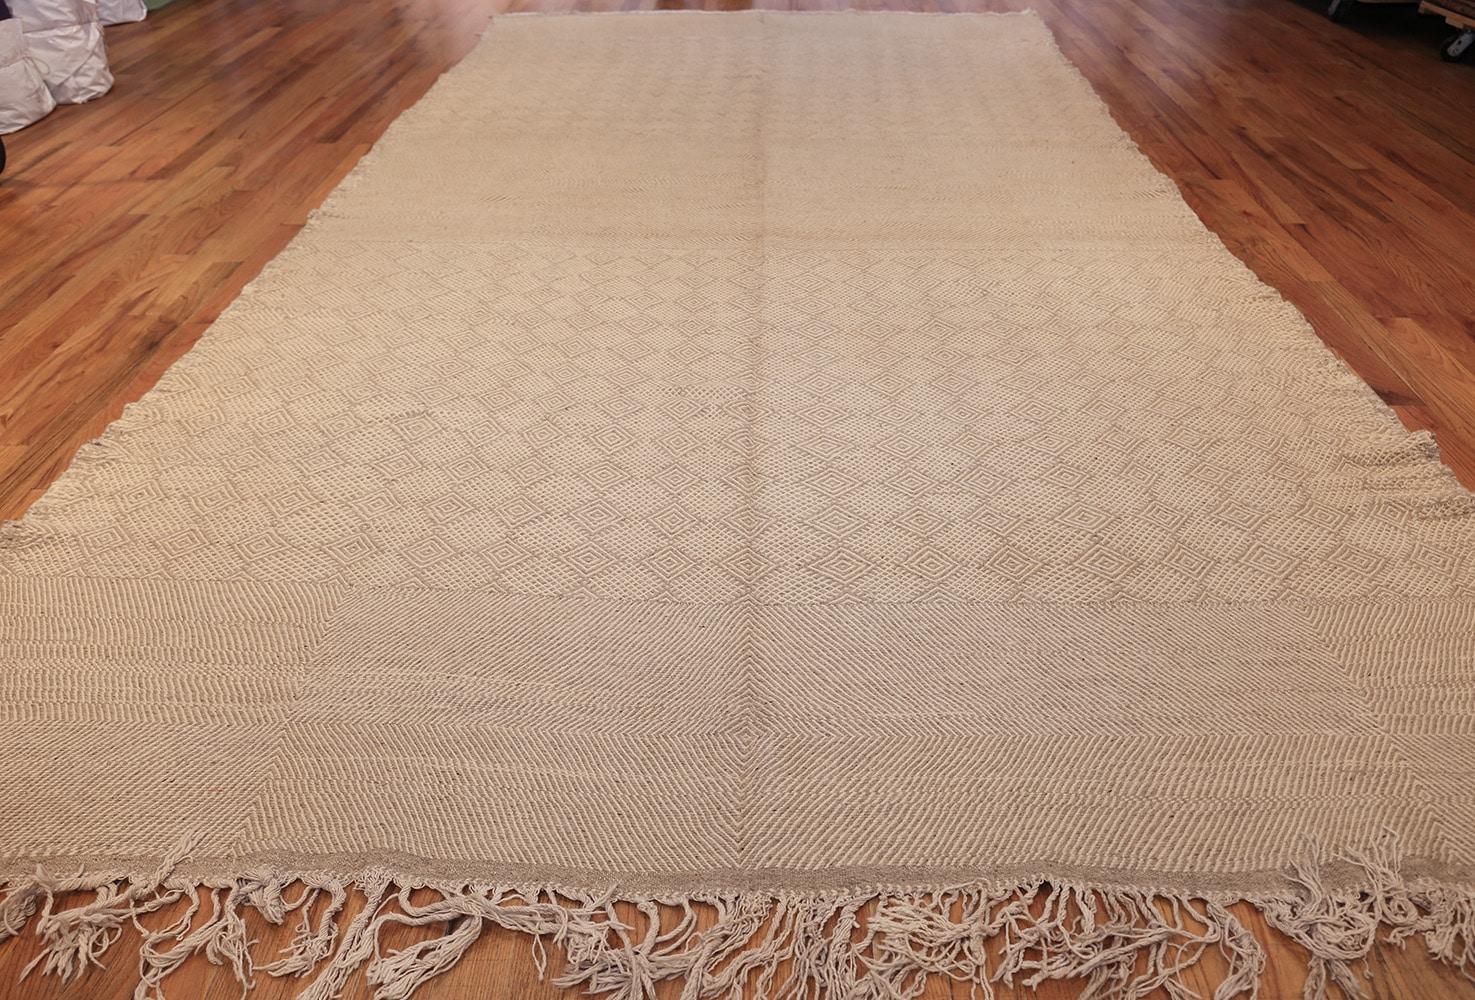 Vintage Marokkanischer Teppich, Herkunft: Marokko, ca. Mitte des 20. Jahrhunderts - Größe: 8 ft 3 in x 16 ft 4 in (2,51 m x 4,98 m)

Dieser elegante Vintage-Teppich aus Marokko ist in reizvollen Neutraltönen gehalten und zeigt eine Vielzahl von sich